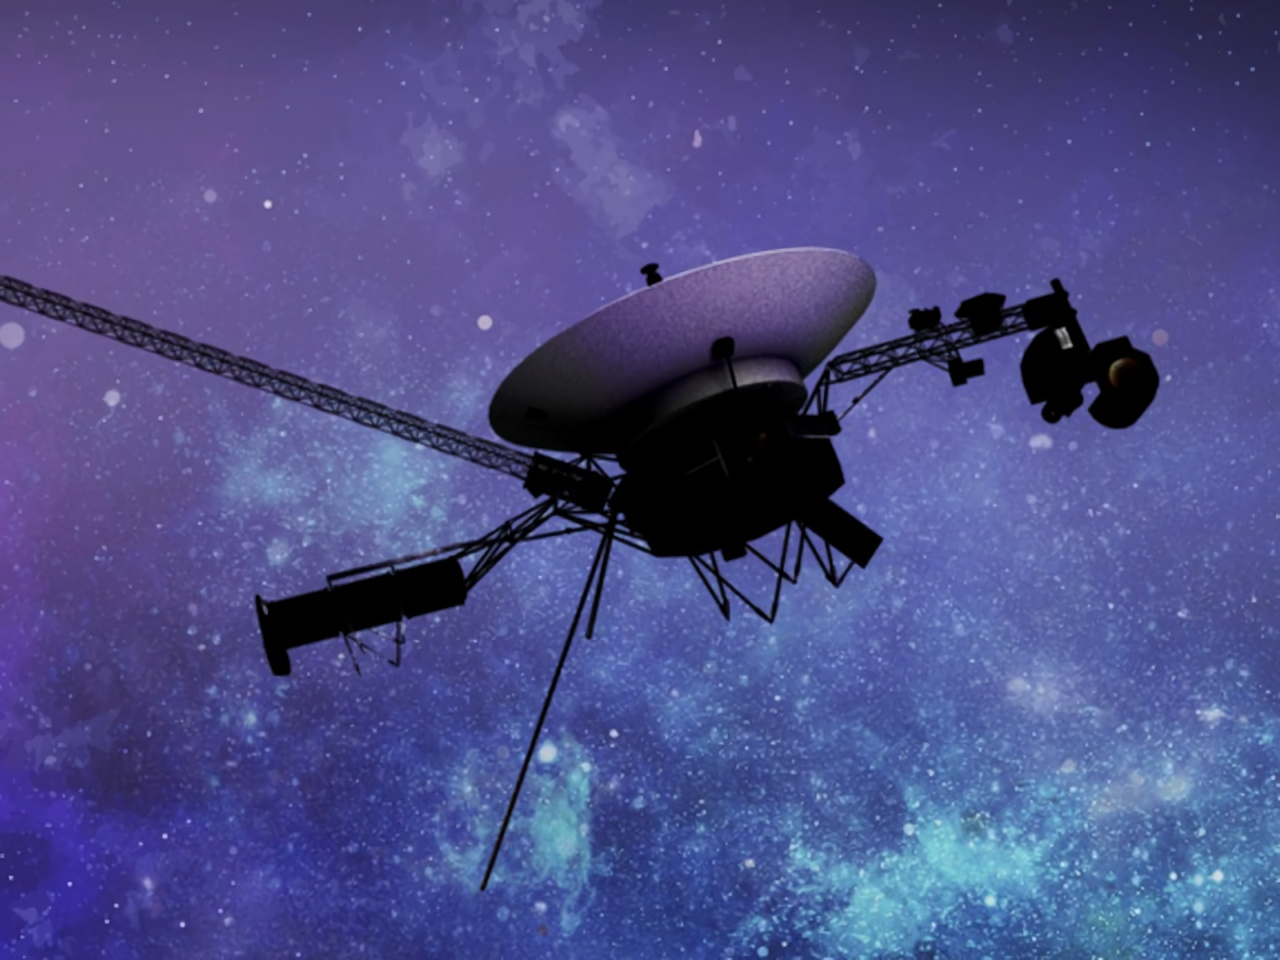 「ボイジャー1号」に障害、観測データを送信できない状態--地球から約240億km